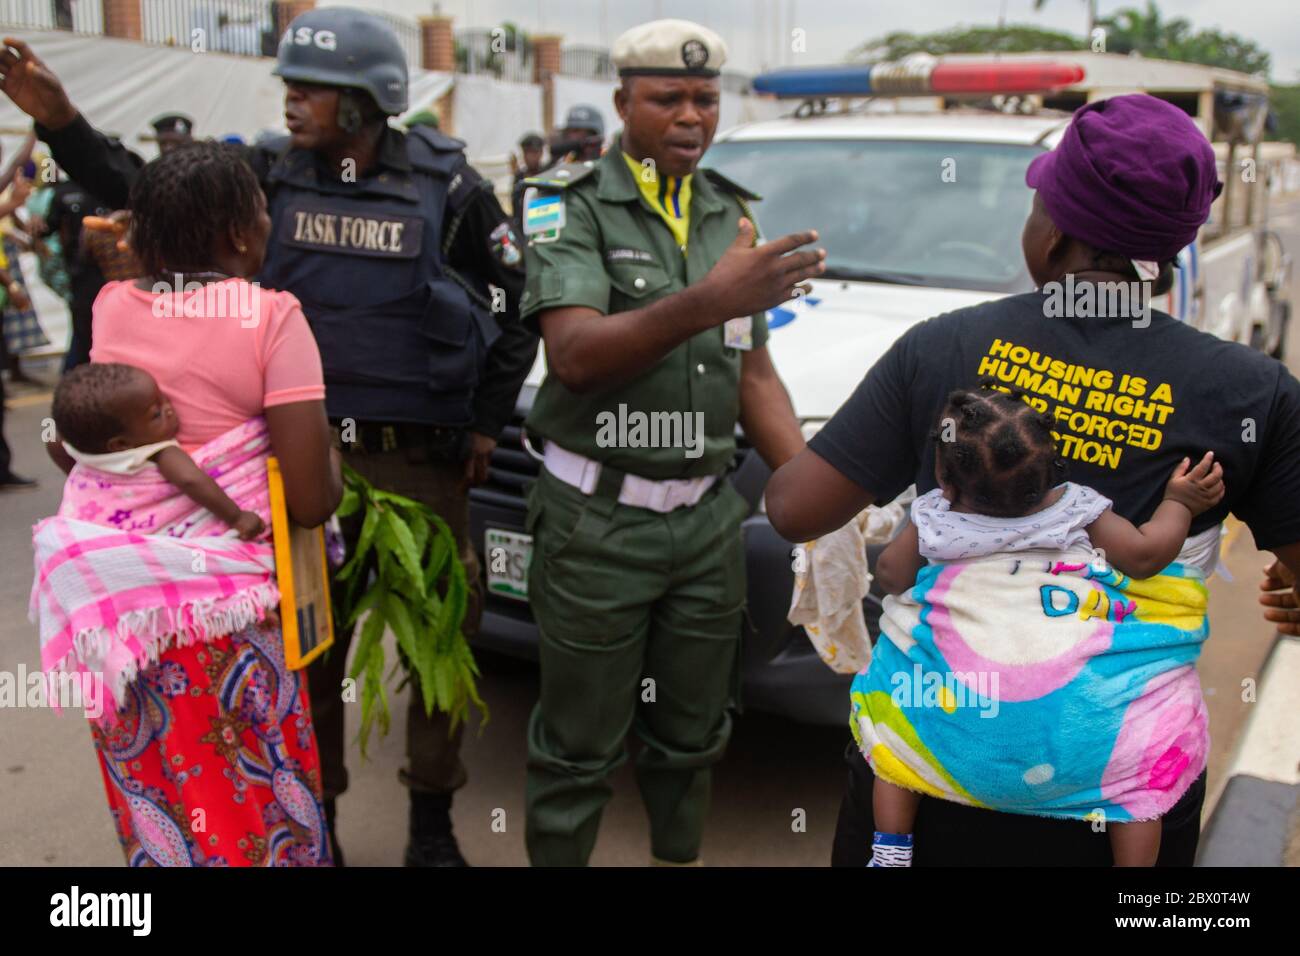 Lagos, Nigeria. Zwei Frauen aus dem Lagos waterfront Gemeinschaften stellen einige Polizisten zu verhindern, dass zunehmend Eingang in die Prämisse des Lagos State Government House. Mehr als 6 Monate nach dem Urteil des Gerichtshofs hat der Staat noch seine Versprechen zu erfüllen und die gerichtliche Anordnungen gehorchen. Otodo Gbame und andere waterfront Gemeinschaften inszenierte einen friedlichen Protest gegen die Regierung. Der Protest abgerechnet wurde für drei Nächte und Tage, die Nigeria Polizei auf die Demonstranten 12.28 gesprungen bin am 16. November und 158 Demonstranten festgenommen. Sie wurden später zu sig Stockfoto